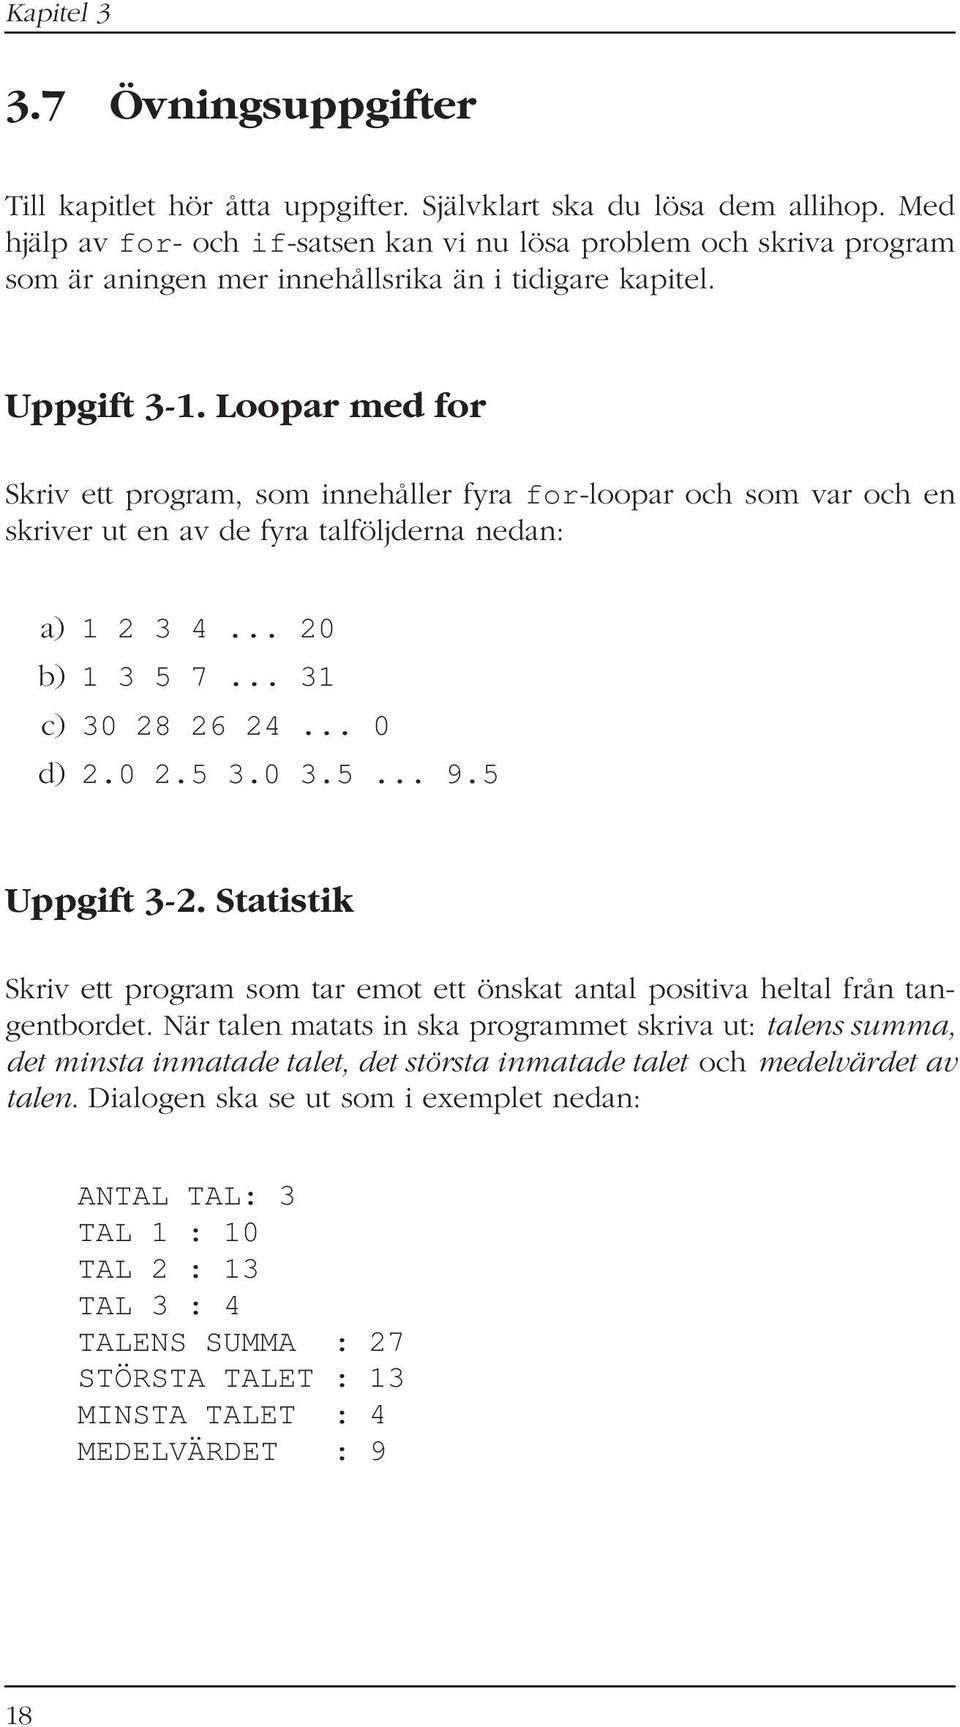 Loopar med for Skriv ett program, som innehåller fyra for-loopar och som var och en skriver ut en av de fyra talföljderna nedan: a) 1 2 3 4... 20 b) 1 3 5 7... 31 c) 30 28 26 24... 0 d) 2.0 2.5 3.0 3.